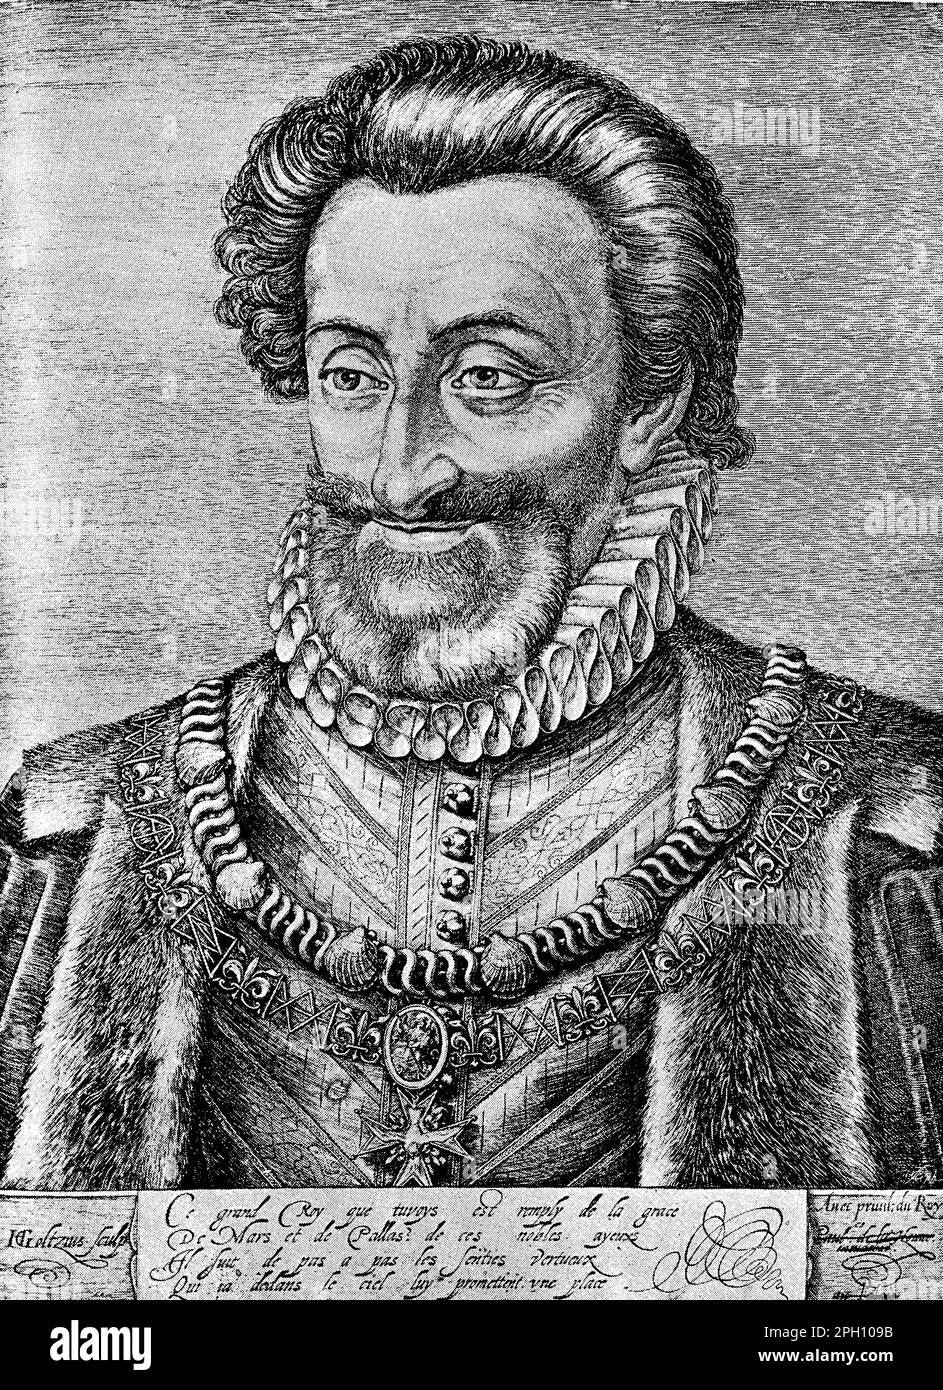 Henri IV (1553-1610) fut roi de France de 1589 jusqu'à son assassinat en 1610. Il était un commandant militaire qualifié et un monarque populaire, connu pour ses efforts pour réconcilier les factions belligérantes de France après les guerres de religion. Il a passé l'édit de Nantes, accordant la tolérance religieuse aux protestants français. Henry a également supervisé une importante croissance économique et culturelle, posant les bases de l'État absolutiste français. Banque D'Images